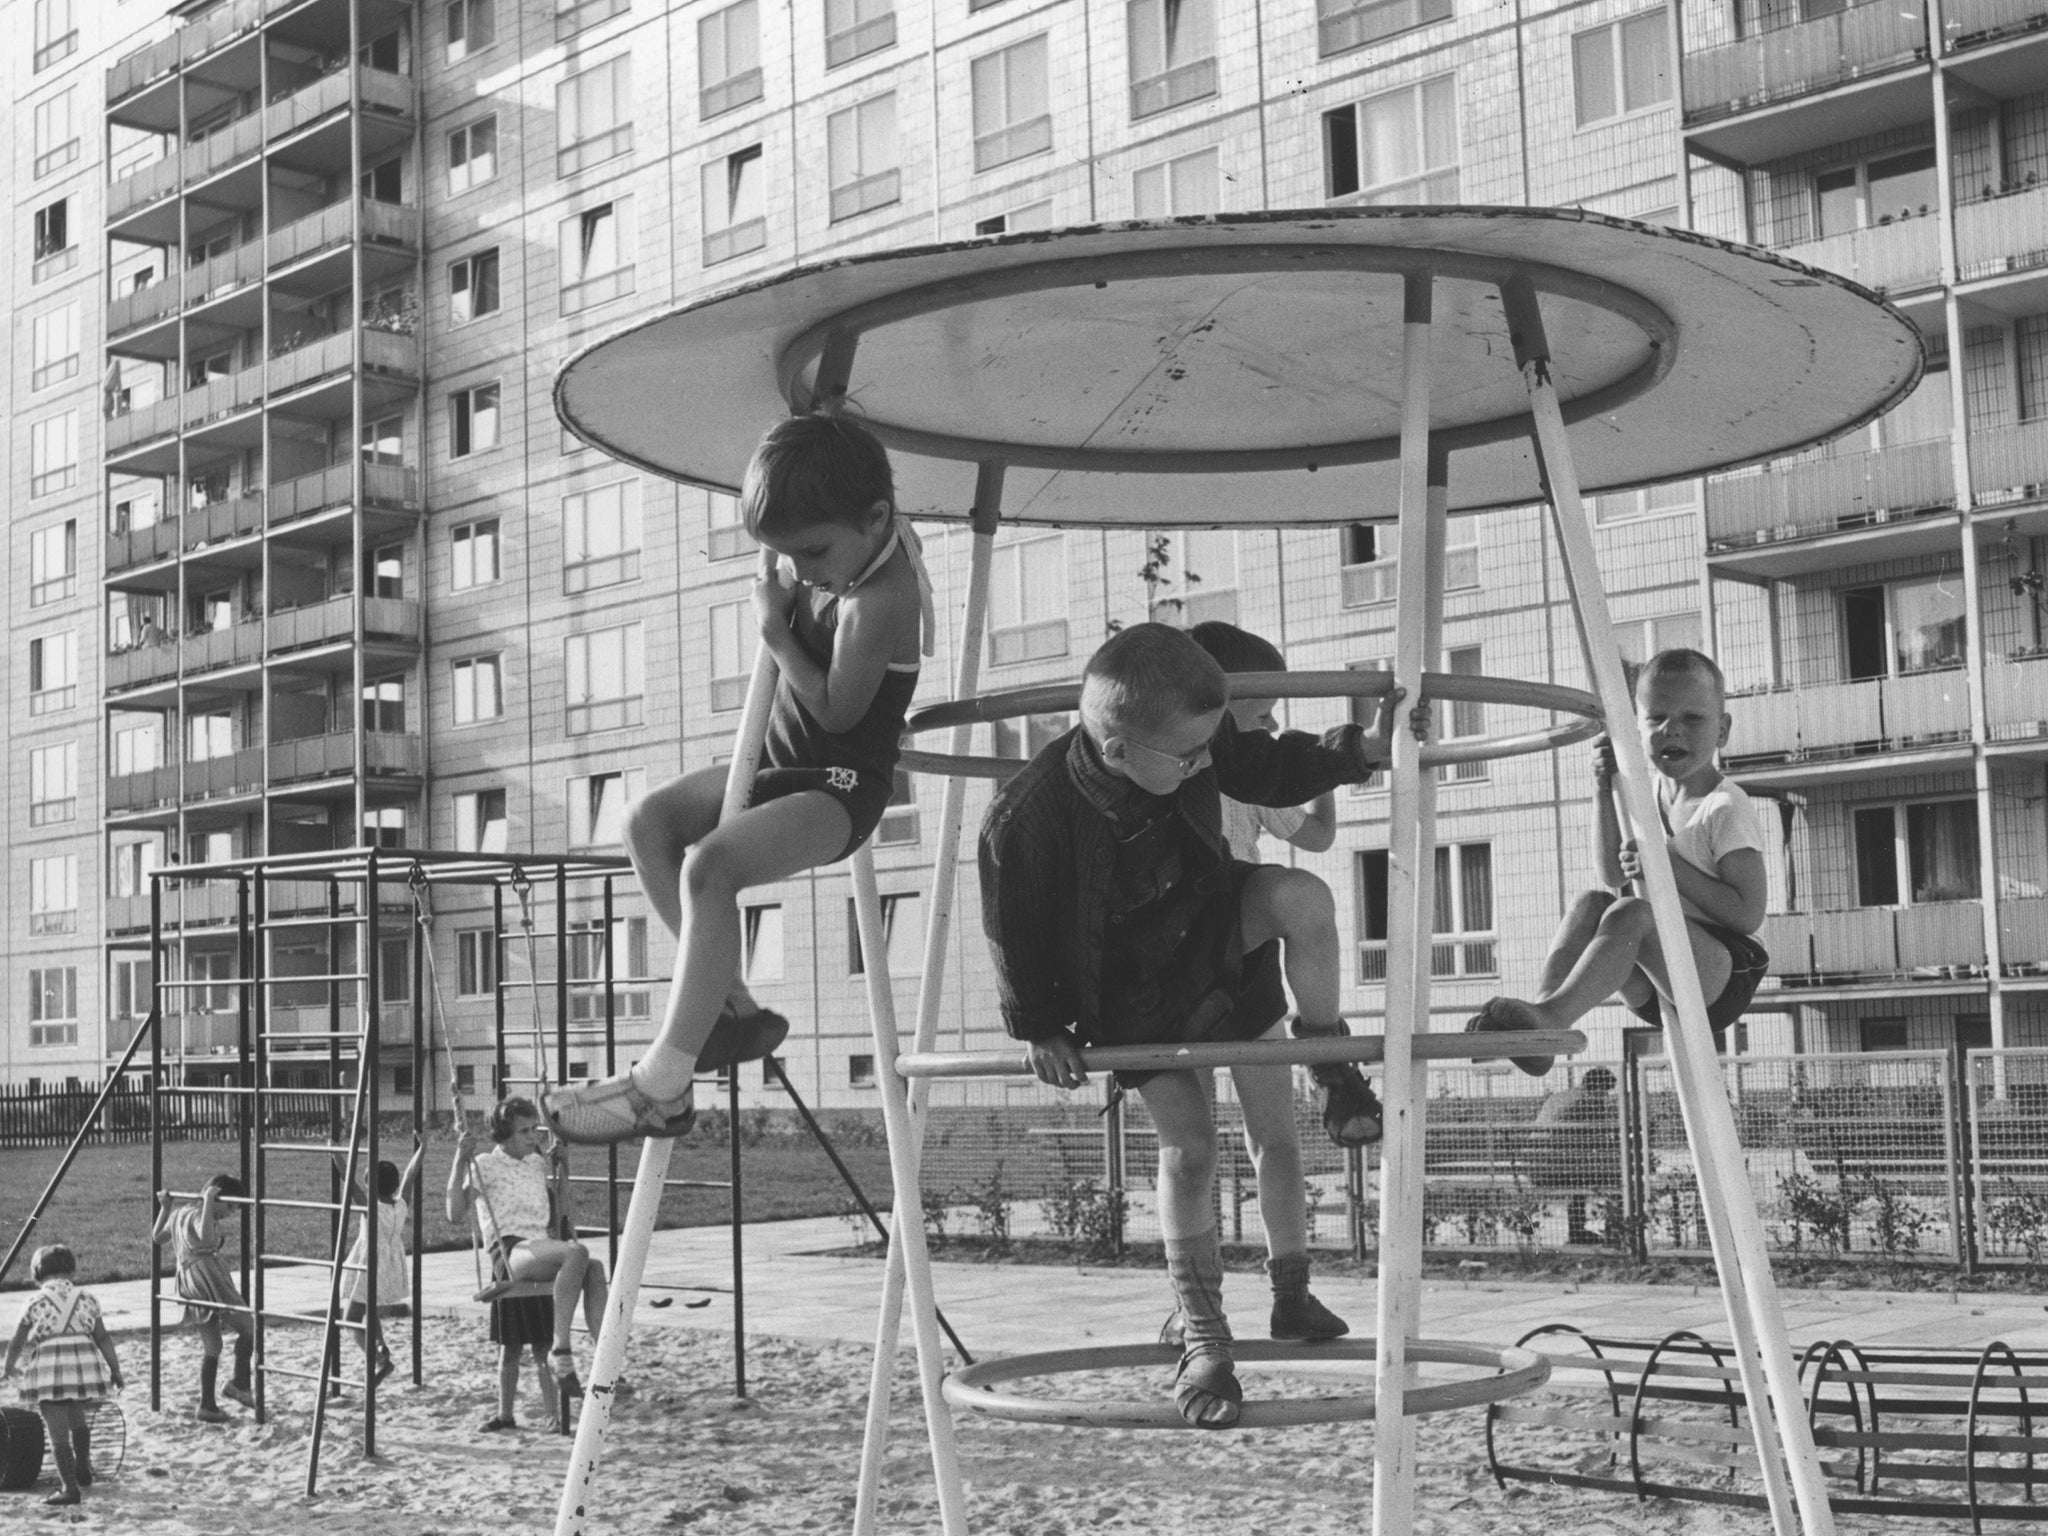 Children in East Berlin